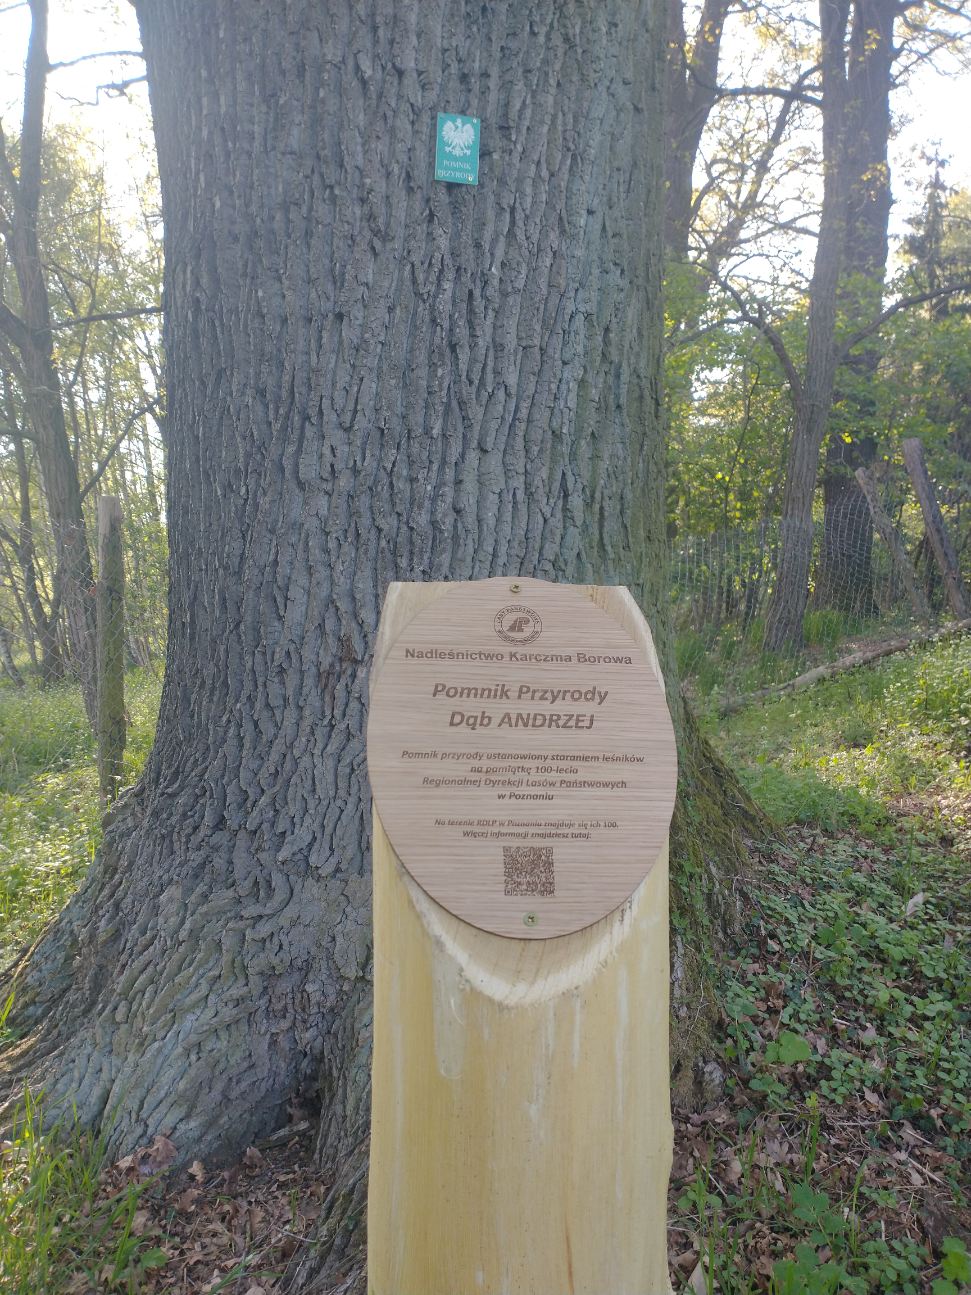 Zdjęcie przedstawia pomnikowe drzewo i stojącą przed nim tabliczkę na słupku. Fot. Archiwum Nadleśnictwa Karczma Borowa